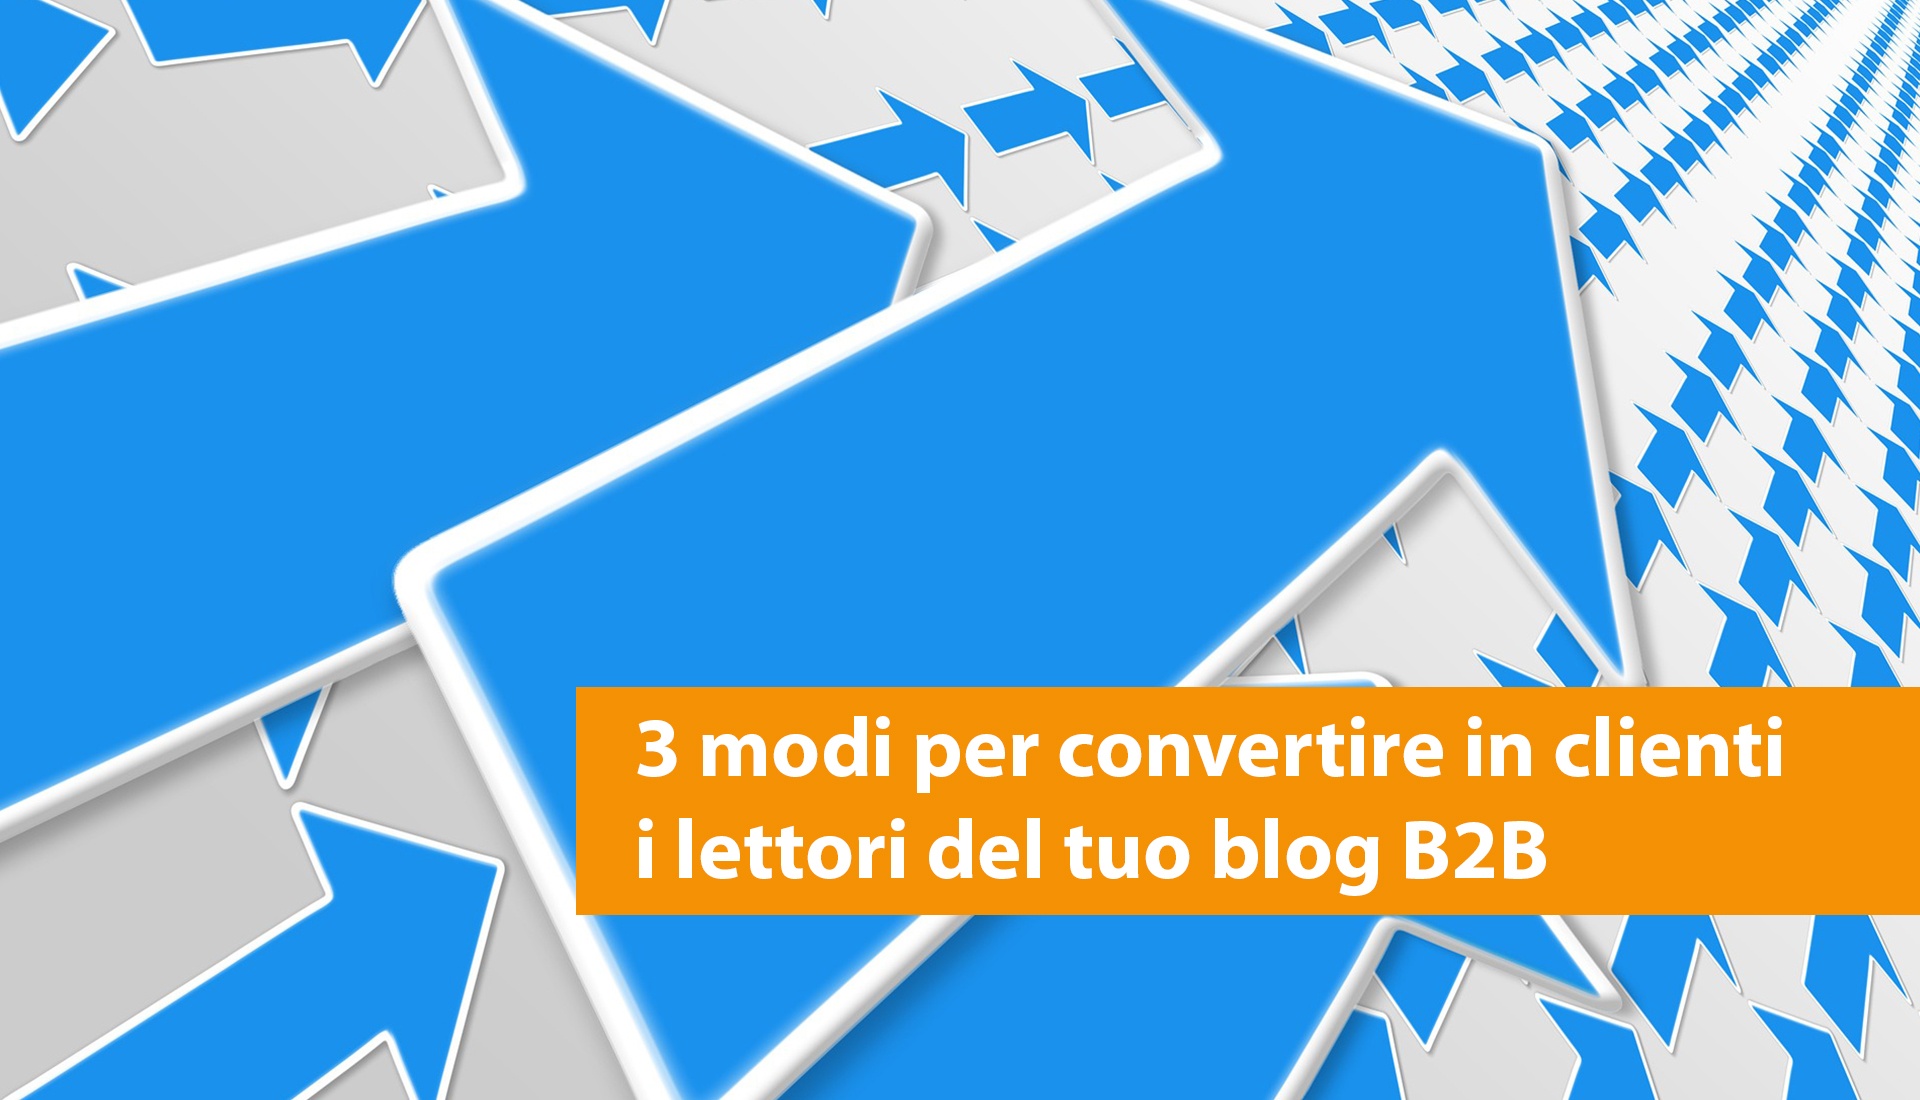 3-modi-per-convertire-in-clienti-i-lettori-del-tuo-blog-b2b-1.jpg